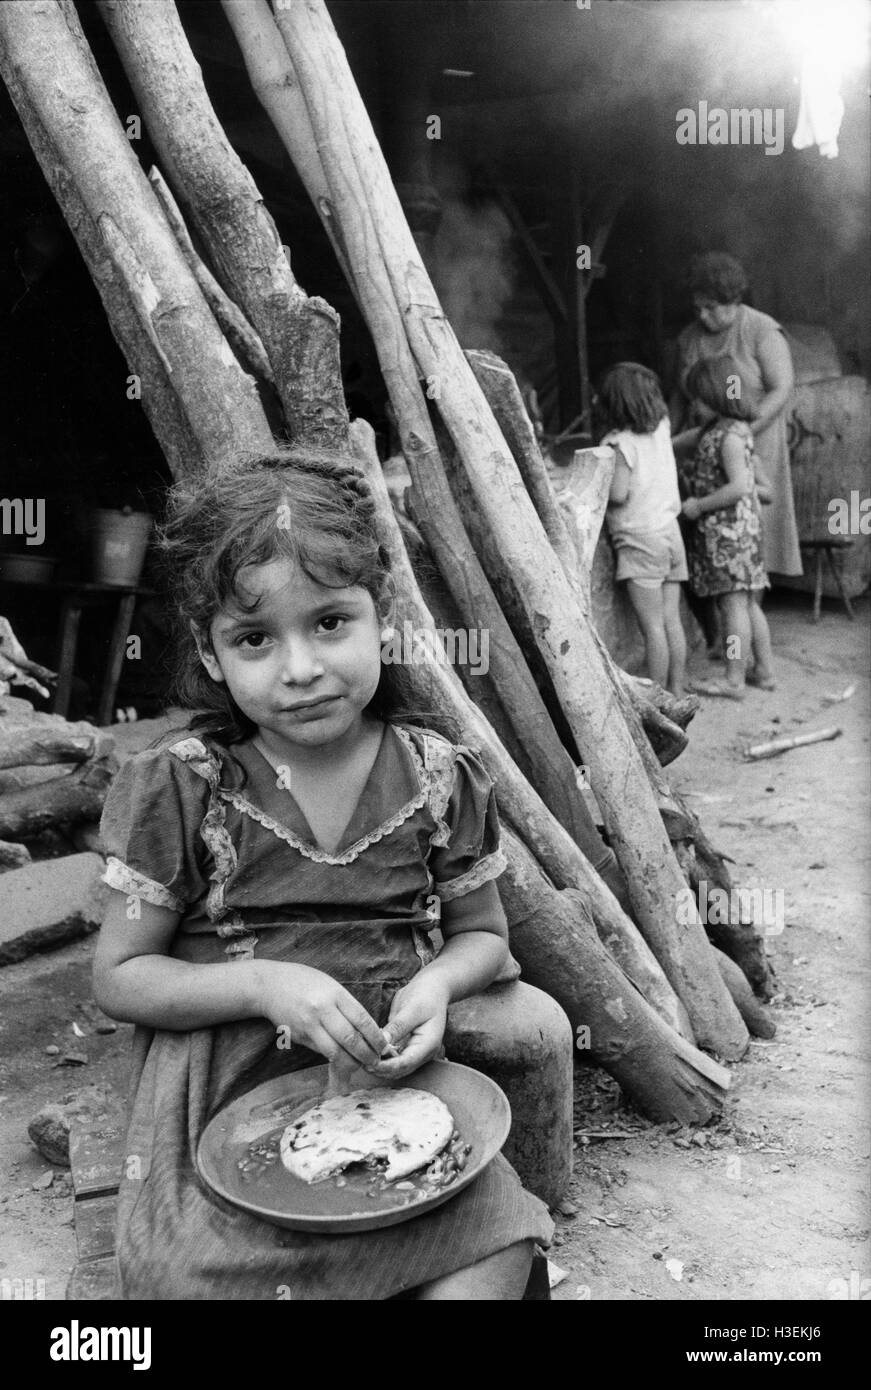 SANTA TECLA, EL SALVADOR, Mai 1986: Vertriebene Familie, Santa Tecl Zuflucht, San Salvador.  Viele der Vertriebenen sind seit vier Jahren in Lagern. Stockfoto